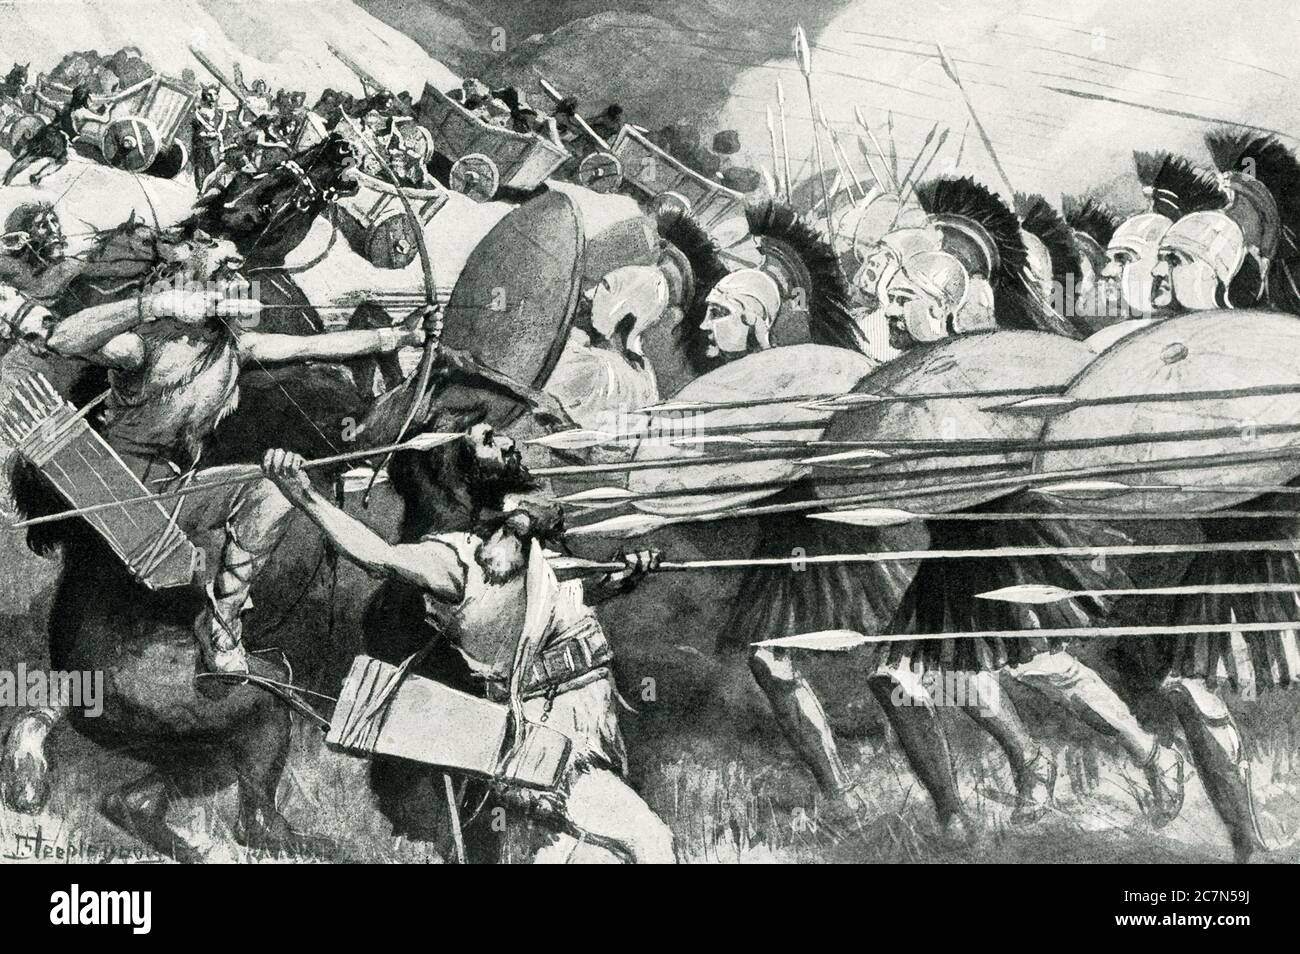 Die mazedonische Phalanx - Schlacht der Karten (335 v. Chr.). Der erste der berühmten Siege des jungen Alexander war gegen die wilden Bergstämme Thrakiens. Von den Gipfeln ihrer felsigen Pässe rollten sie Karren voll von schweren Steinen herunter, in der Hoffnung, die kletternden Mazedonier zu zerquetschen und die Ränge der gefürchteten Phalanx zu brechen. Alexander traf den Angriff, indem er seinen Soldaten ansagte, in einer kompakten Masse unter ihren Schilden zu hocken, so dass die einfallenden Wagen ziemlich über sie ohne Verletzung sprangen. Dann traf sich die ungebrochene Phalanx und besiegte die leichteren bewaffneten Barbaren. Stockfoto